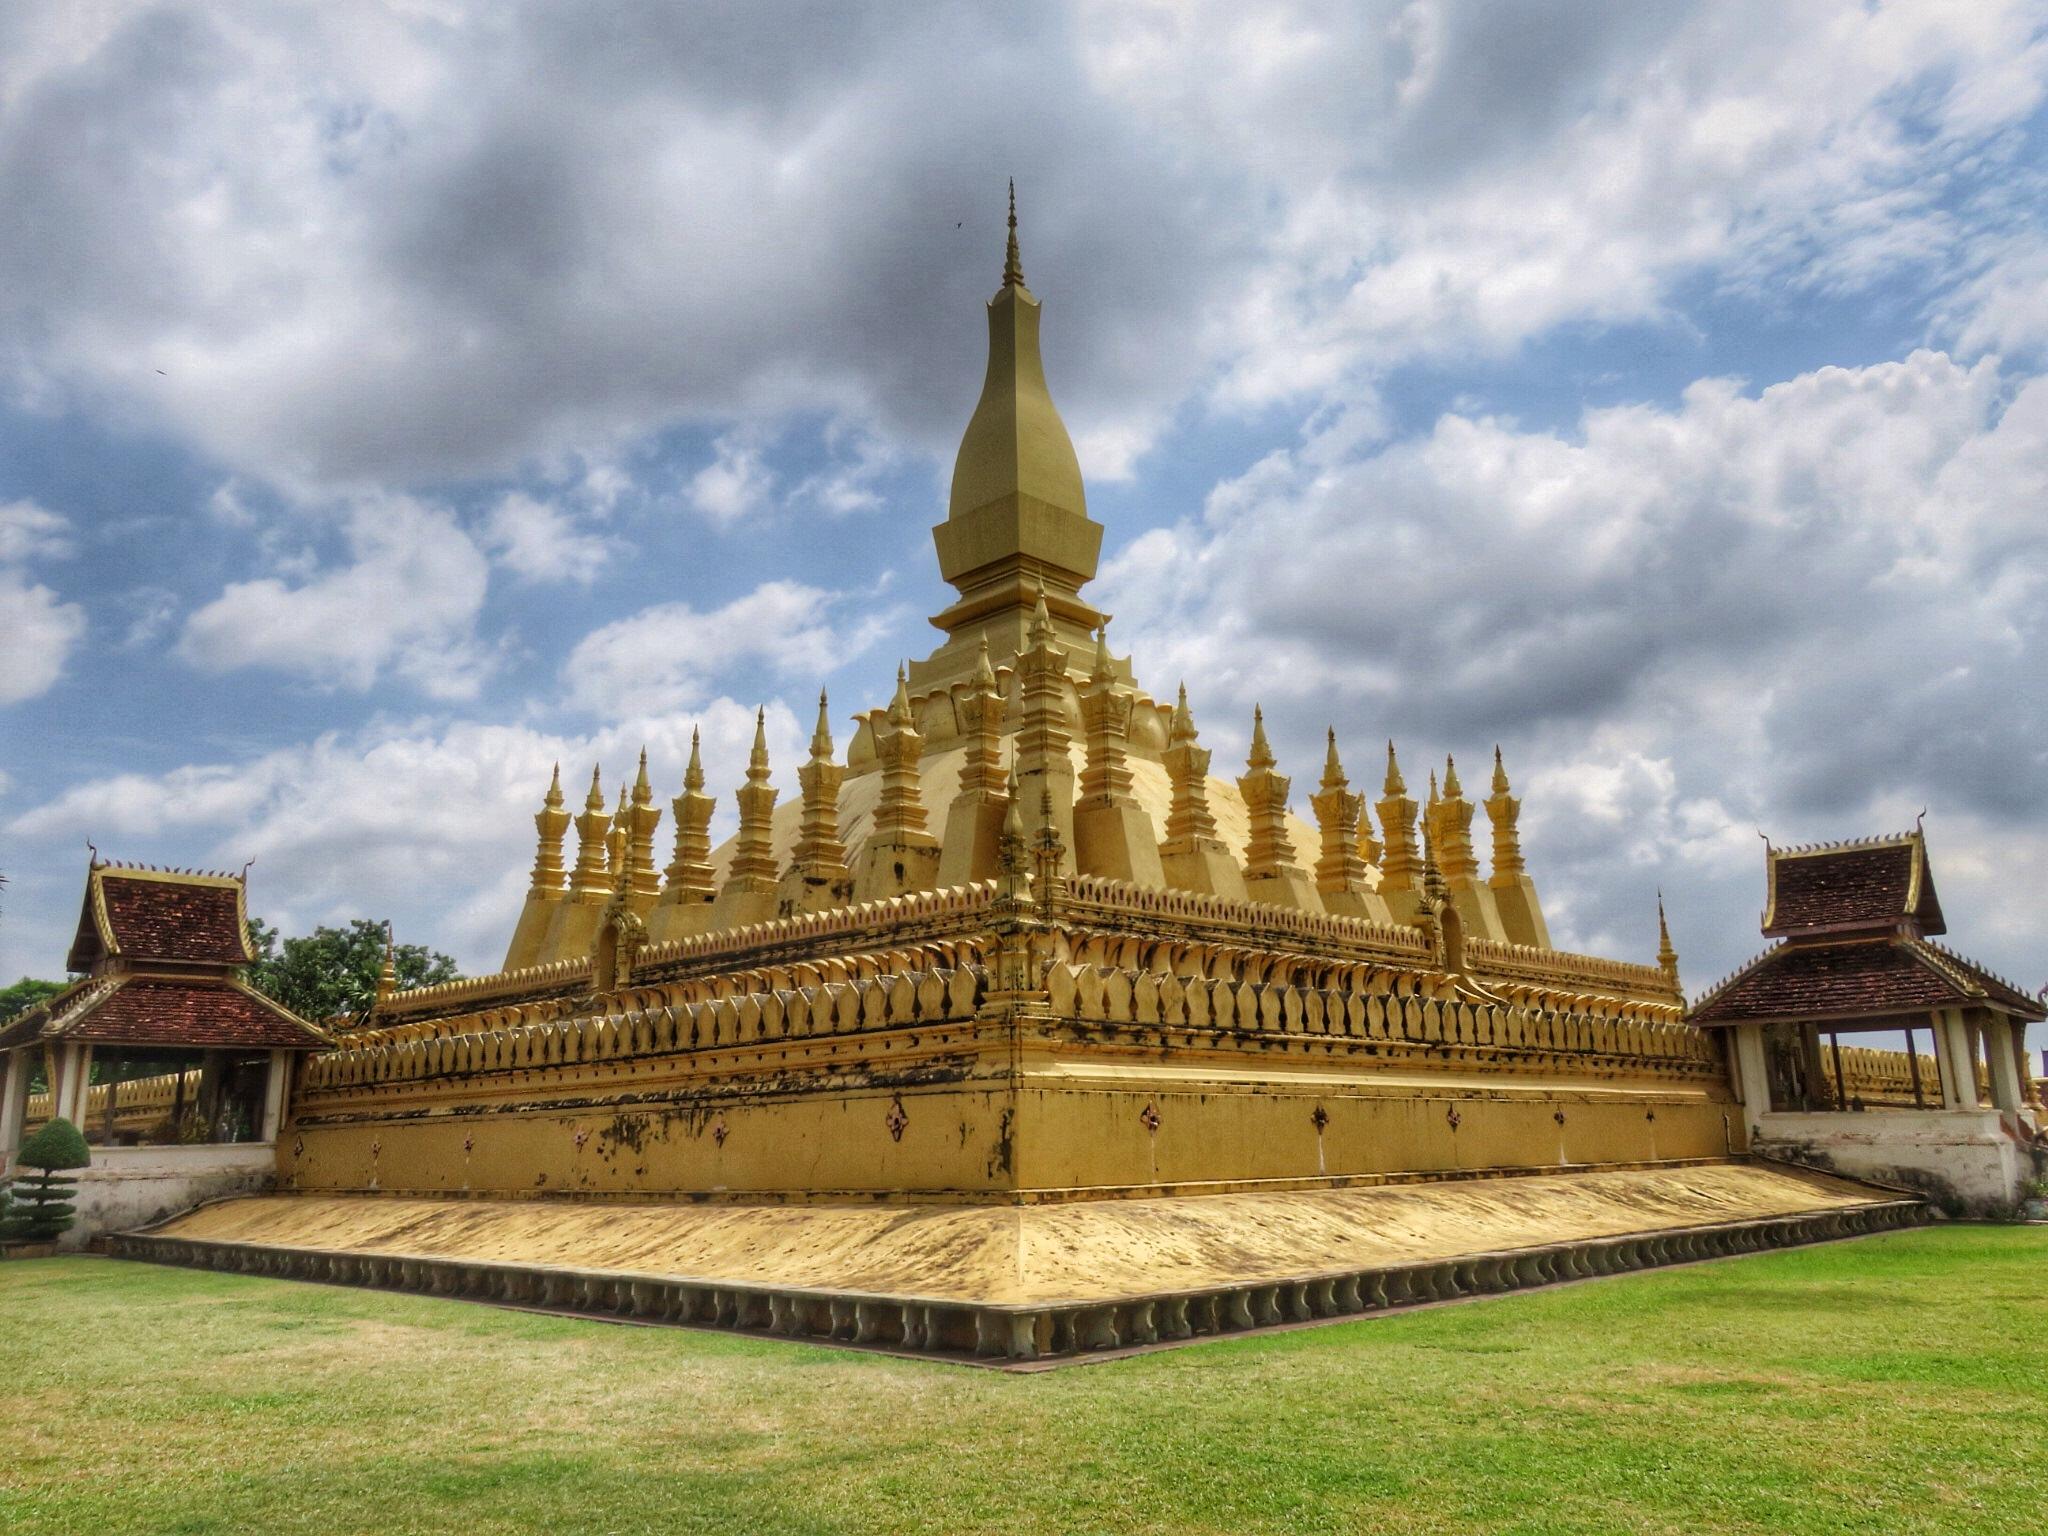 【携程攻略】万象大佛塔景点,老挝国徽上有大佛塔主塔，万象标志性的建筑之一，大金塔在蓝天下挺壮…